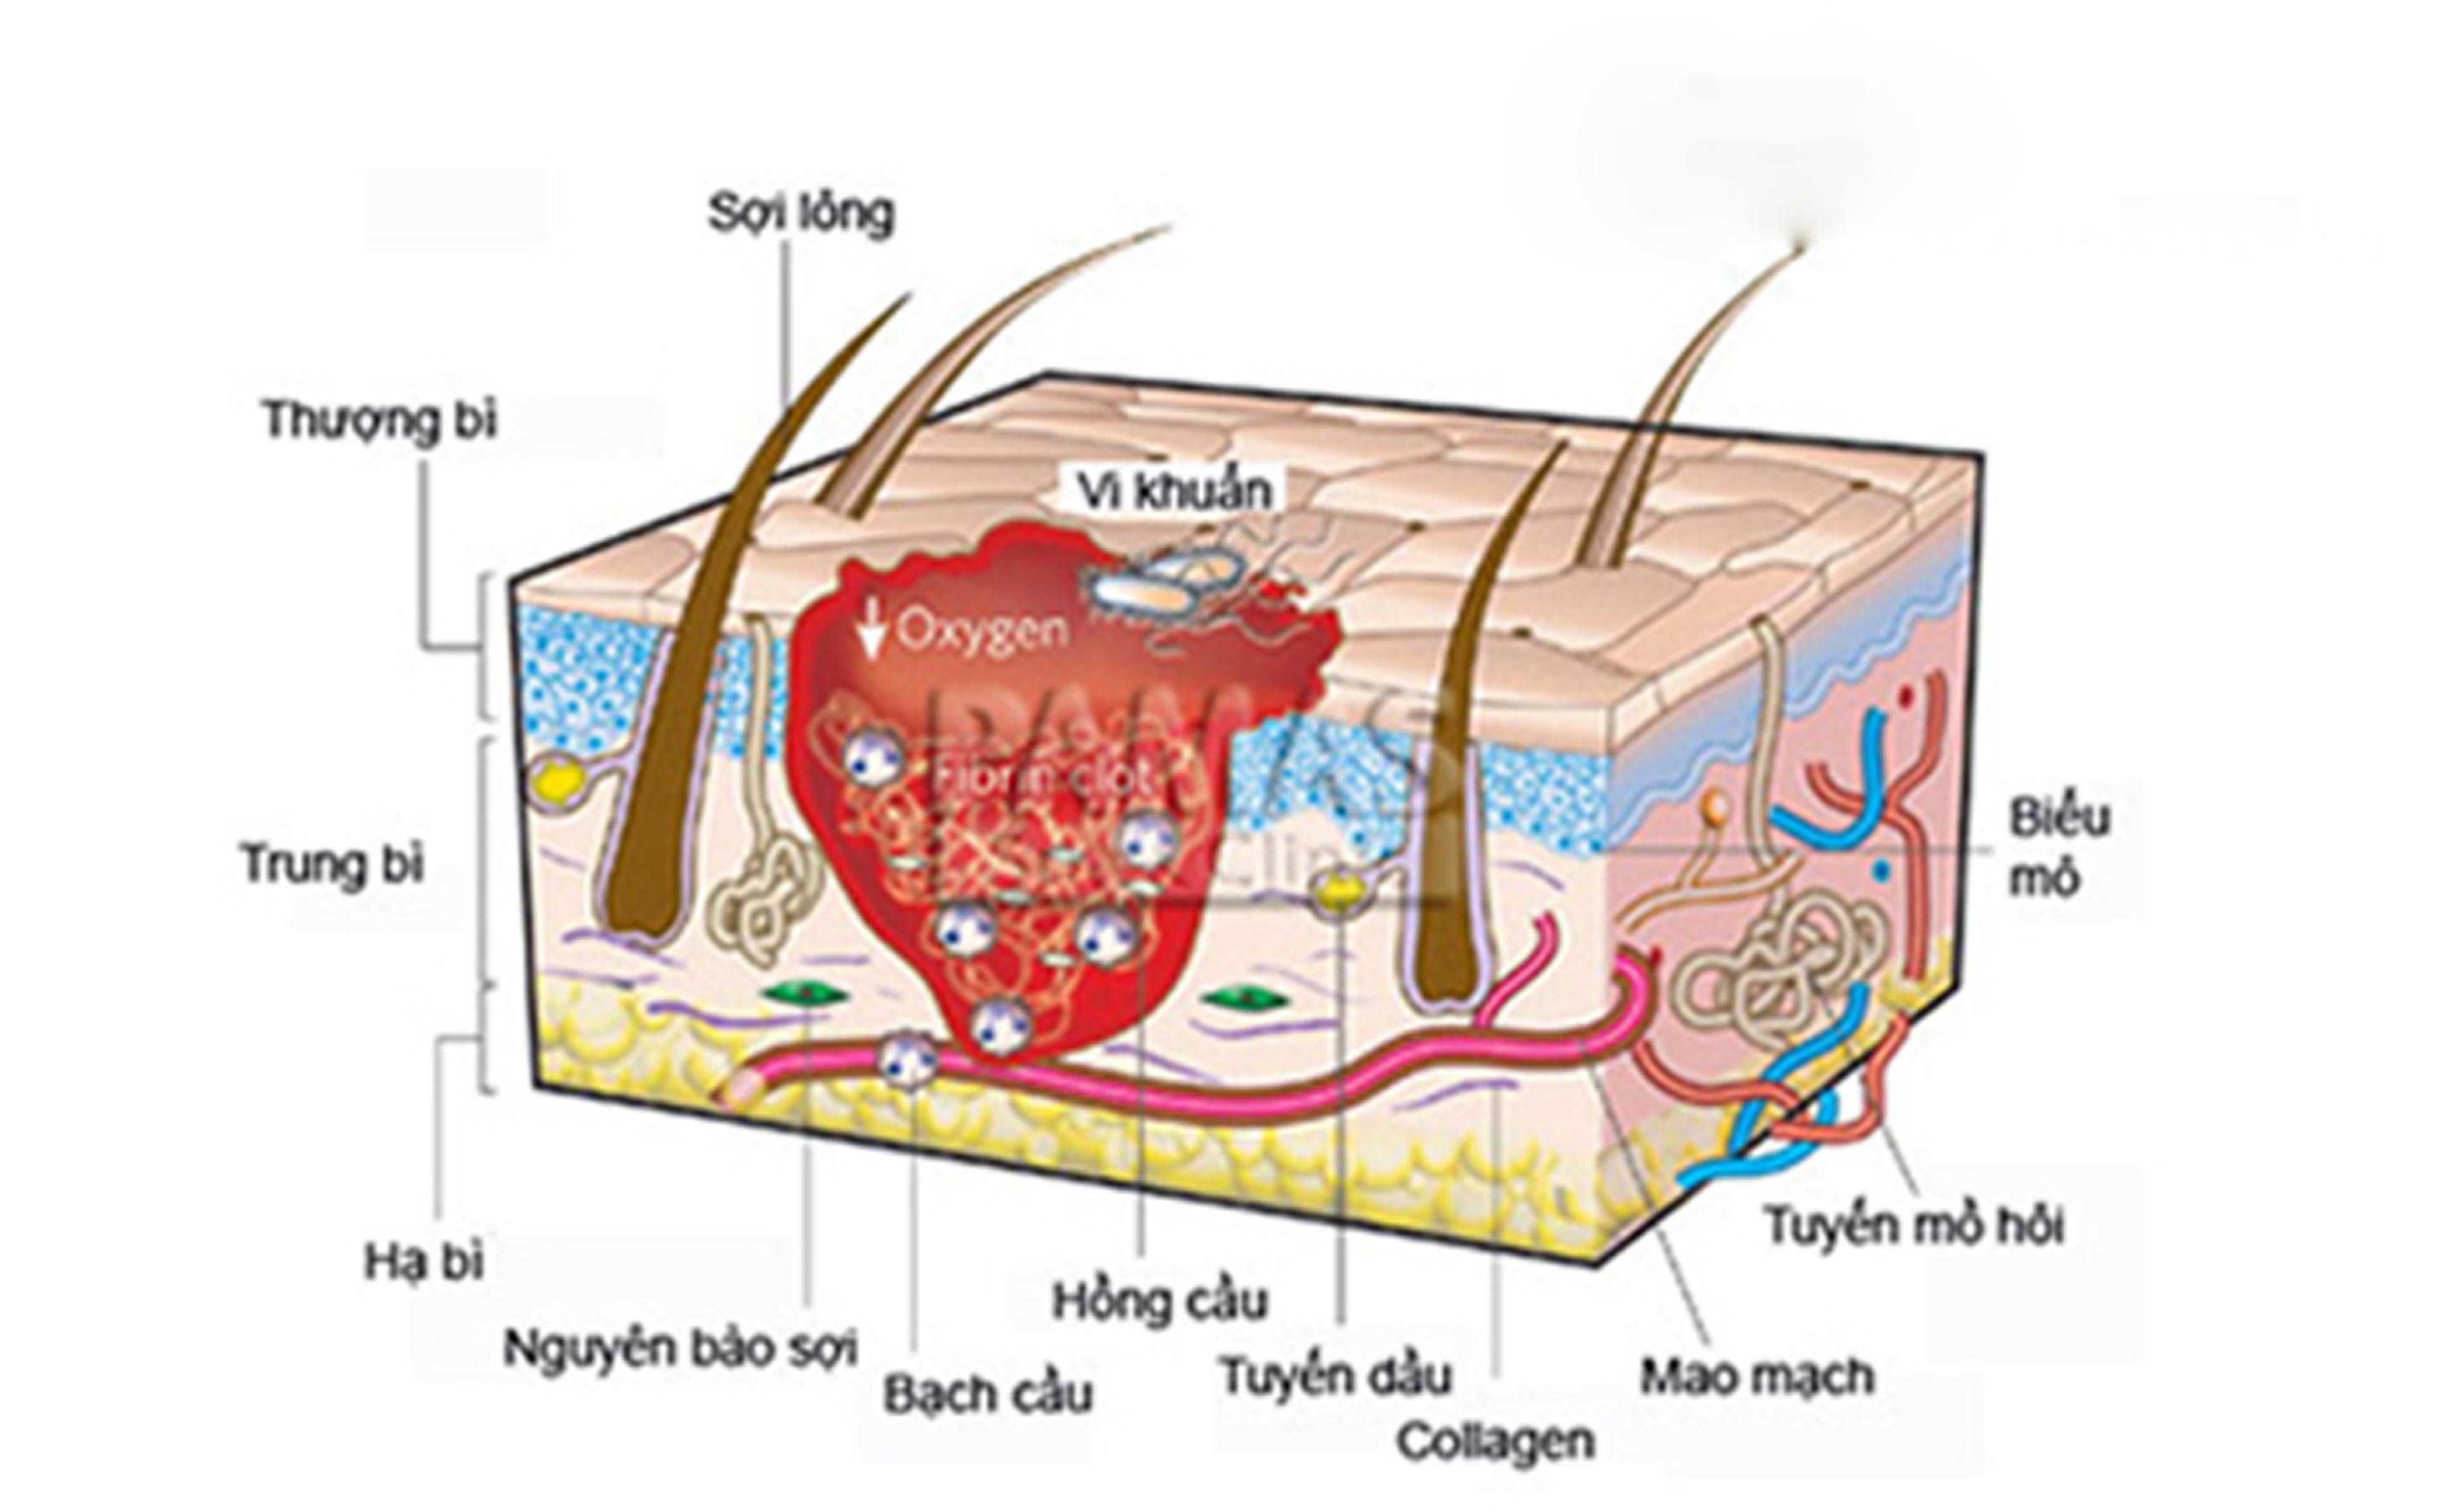 Nguyên tắc triệt lông vĩnh viễn là tác động lên cấu trúc da